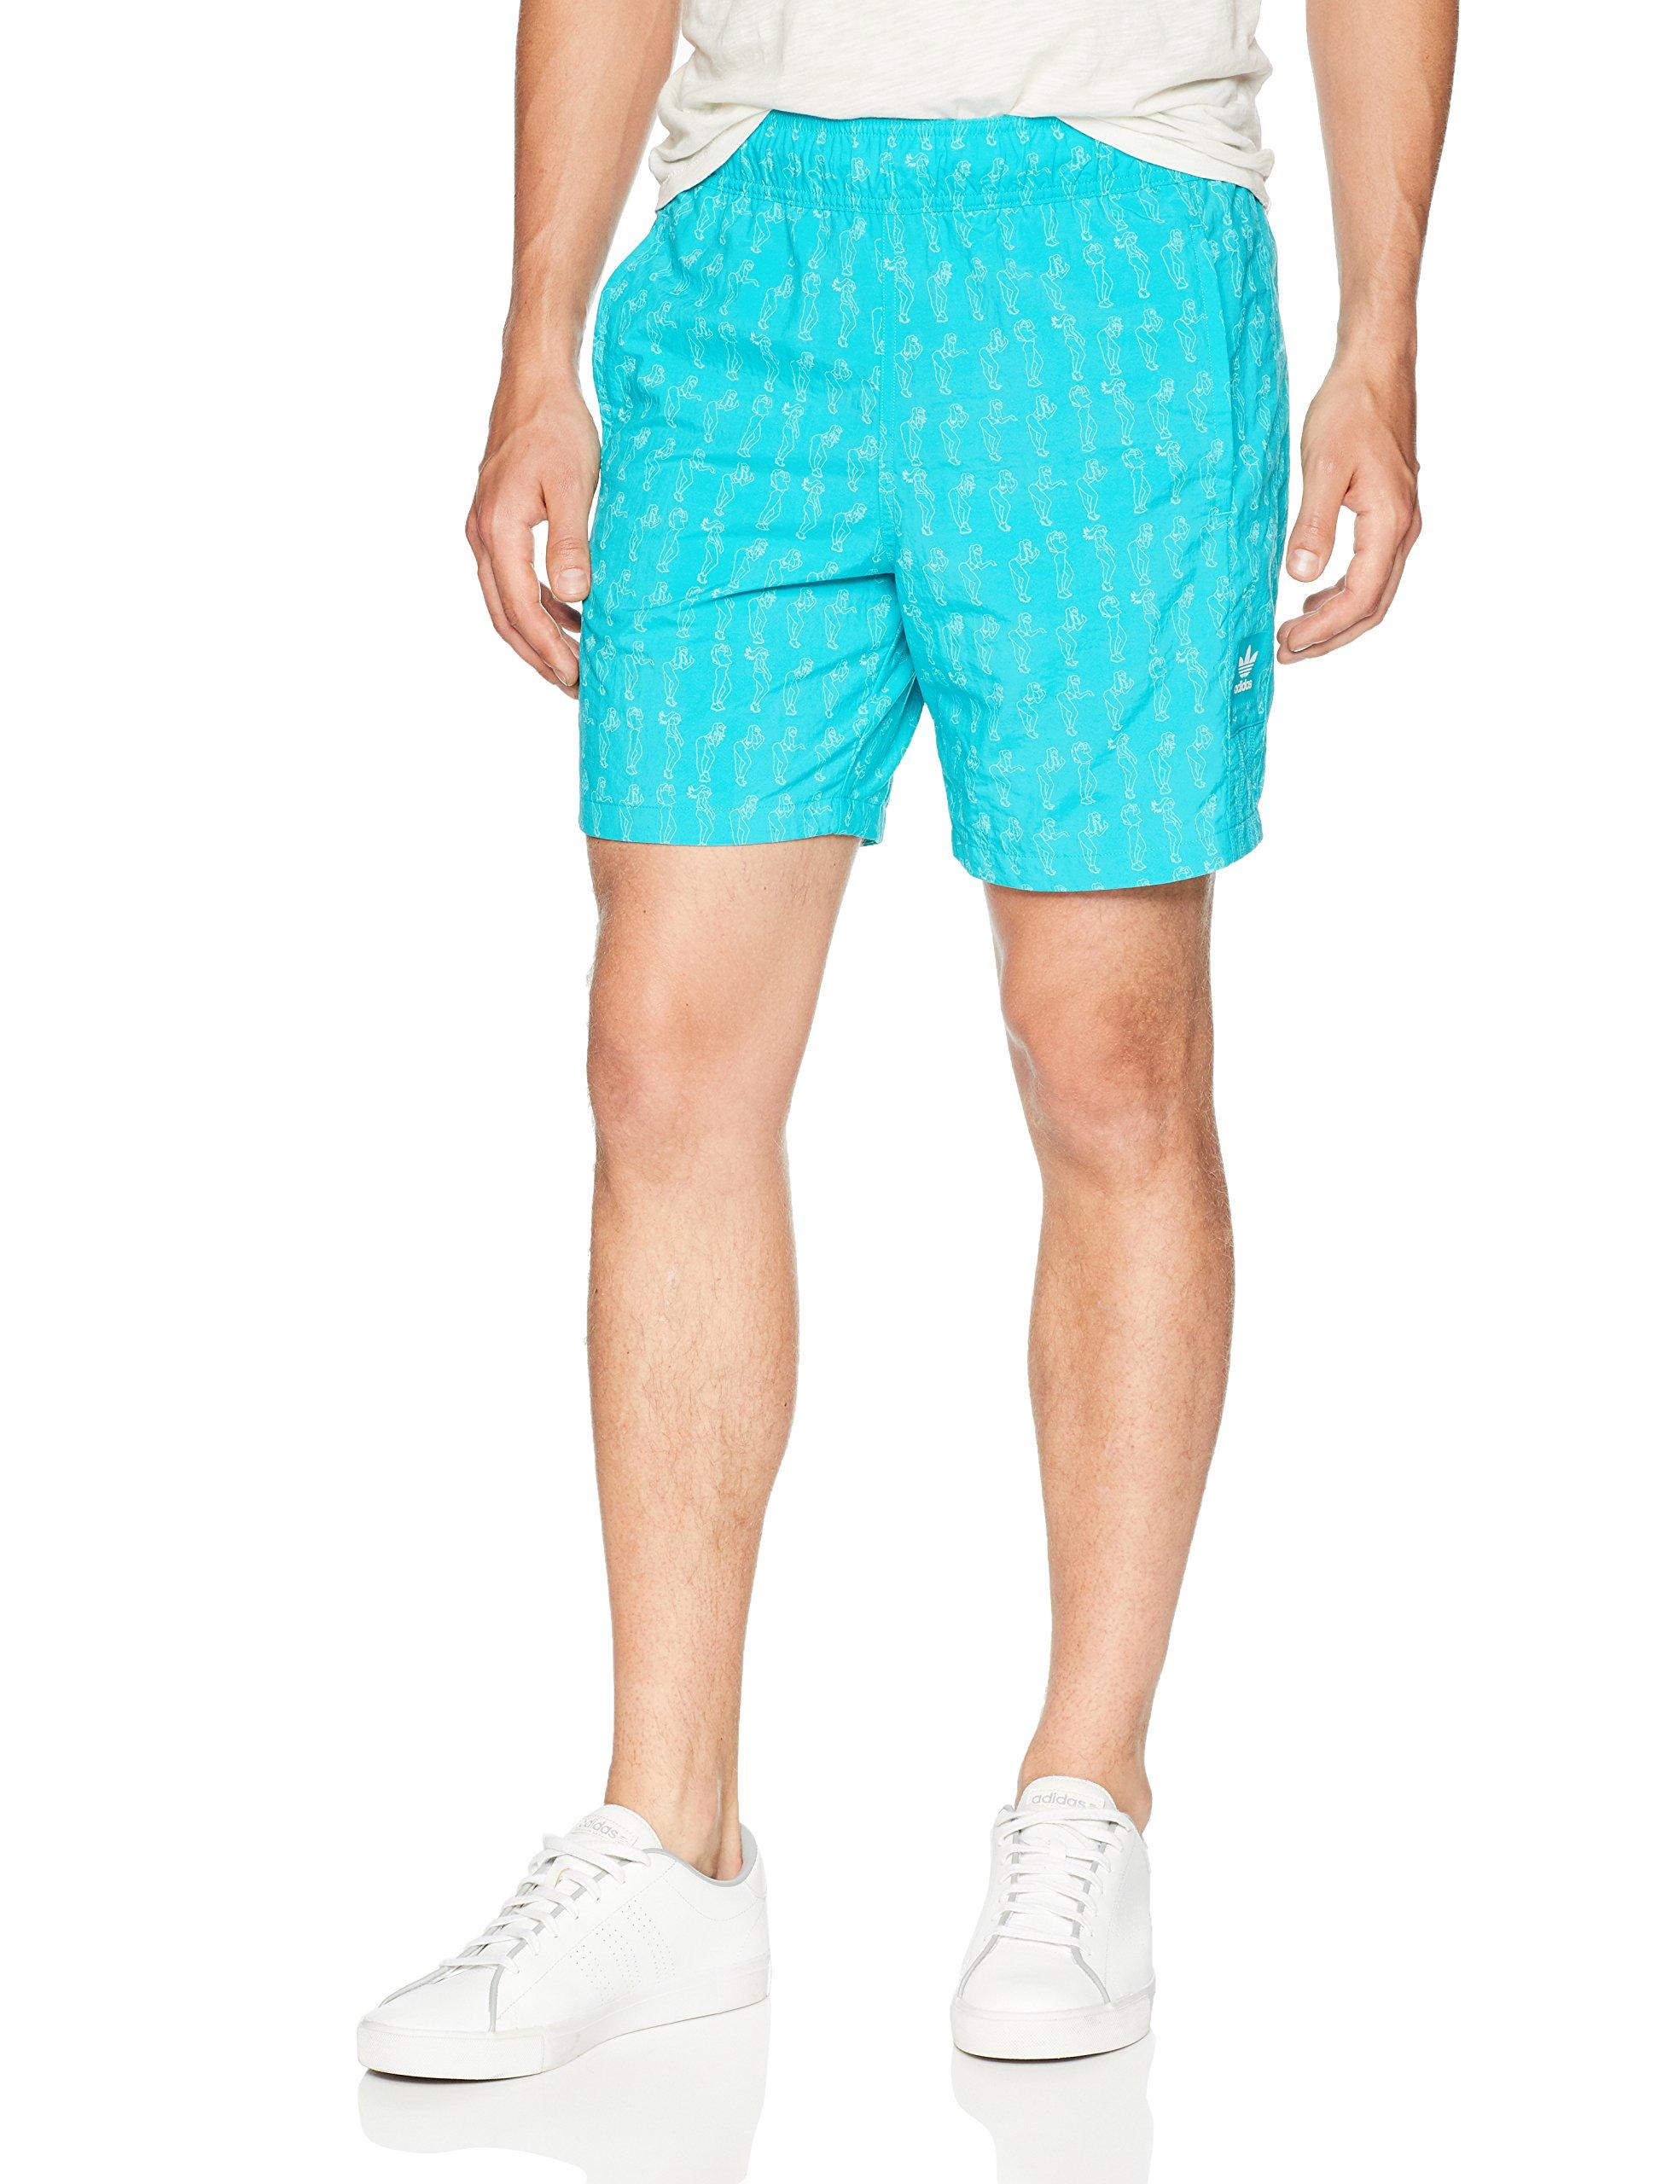 adidas Originals Skateboarding Resort Shorts in Green for Men - Lyst